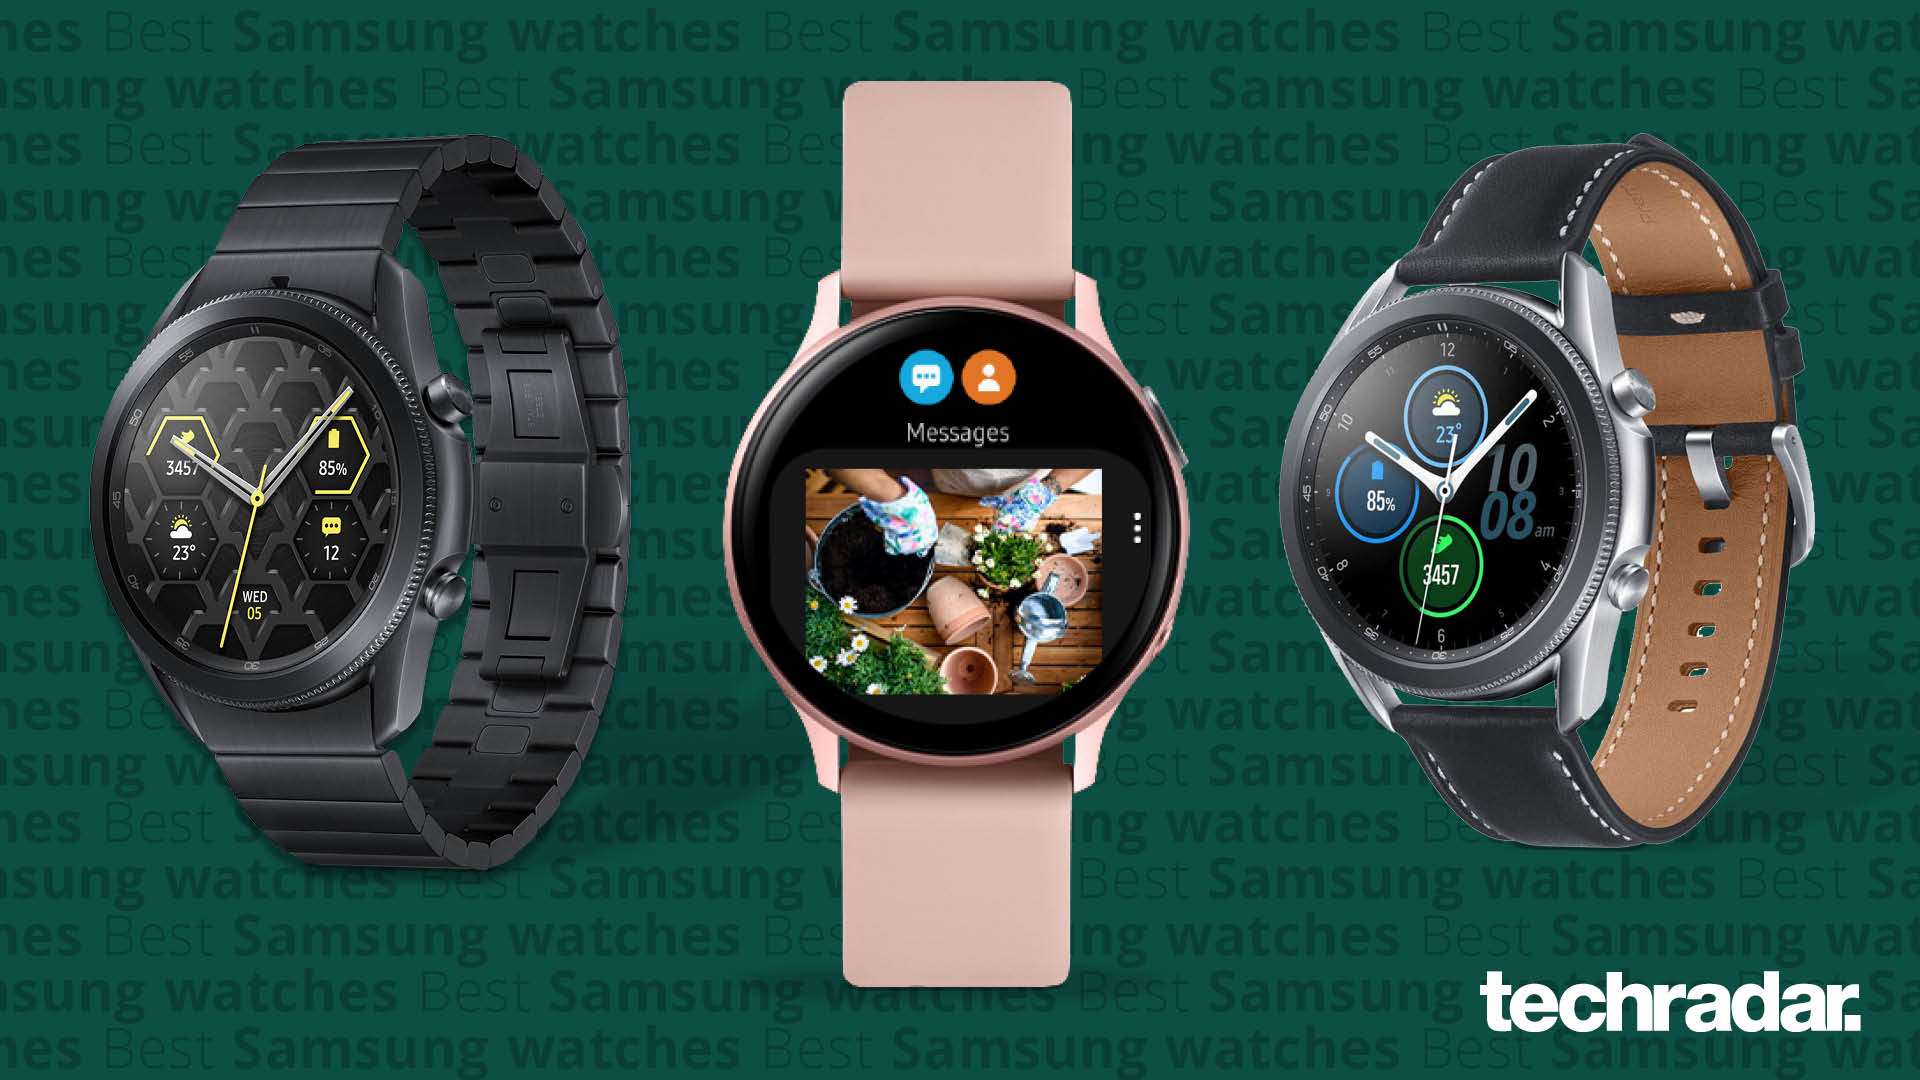 reb daytime fabrik Best Samsung watch 2022: our top Tizen smartwatch choices | TechRadar